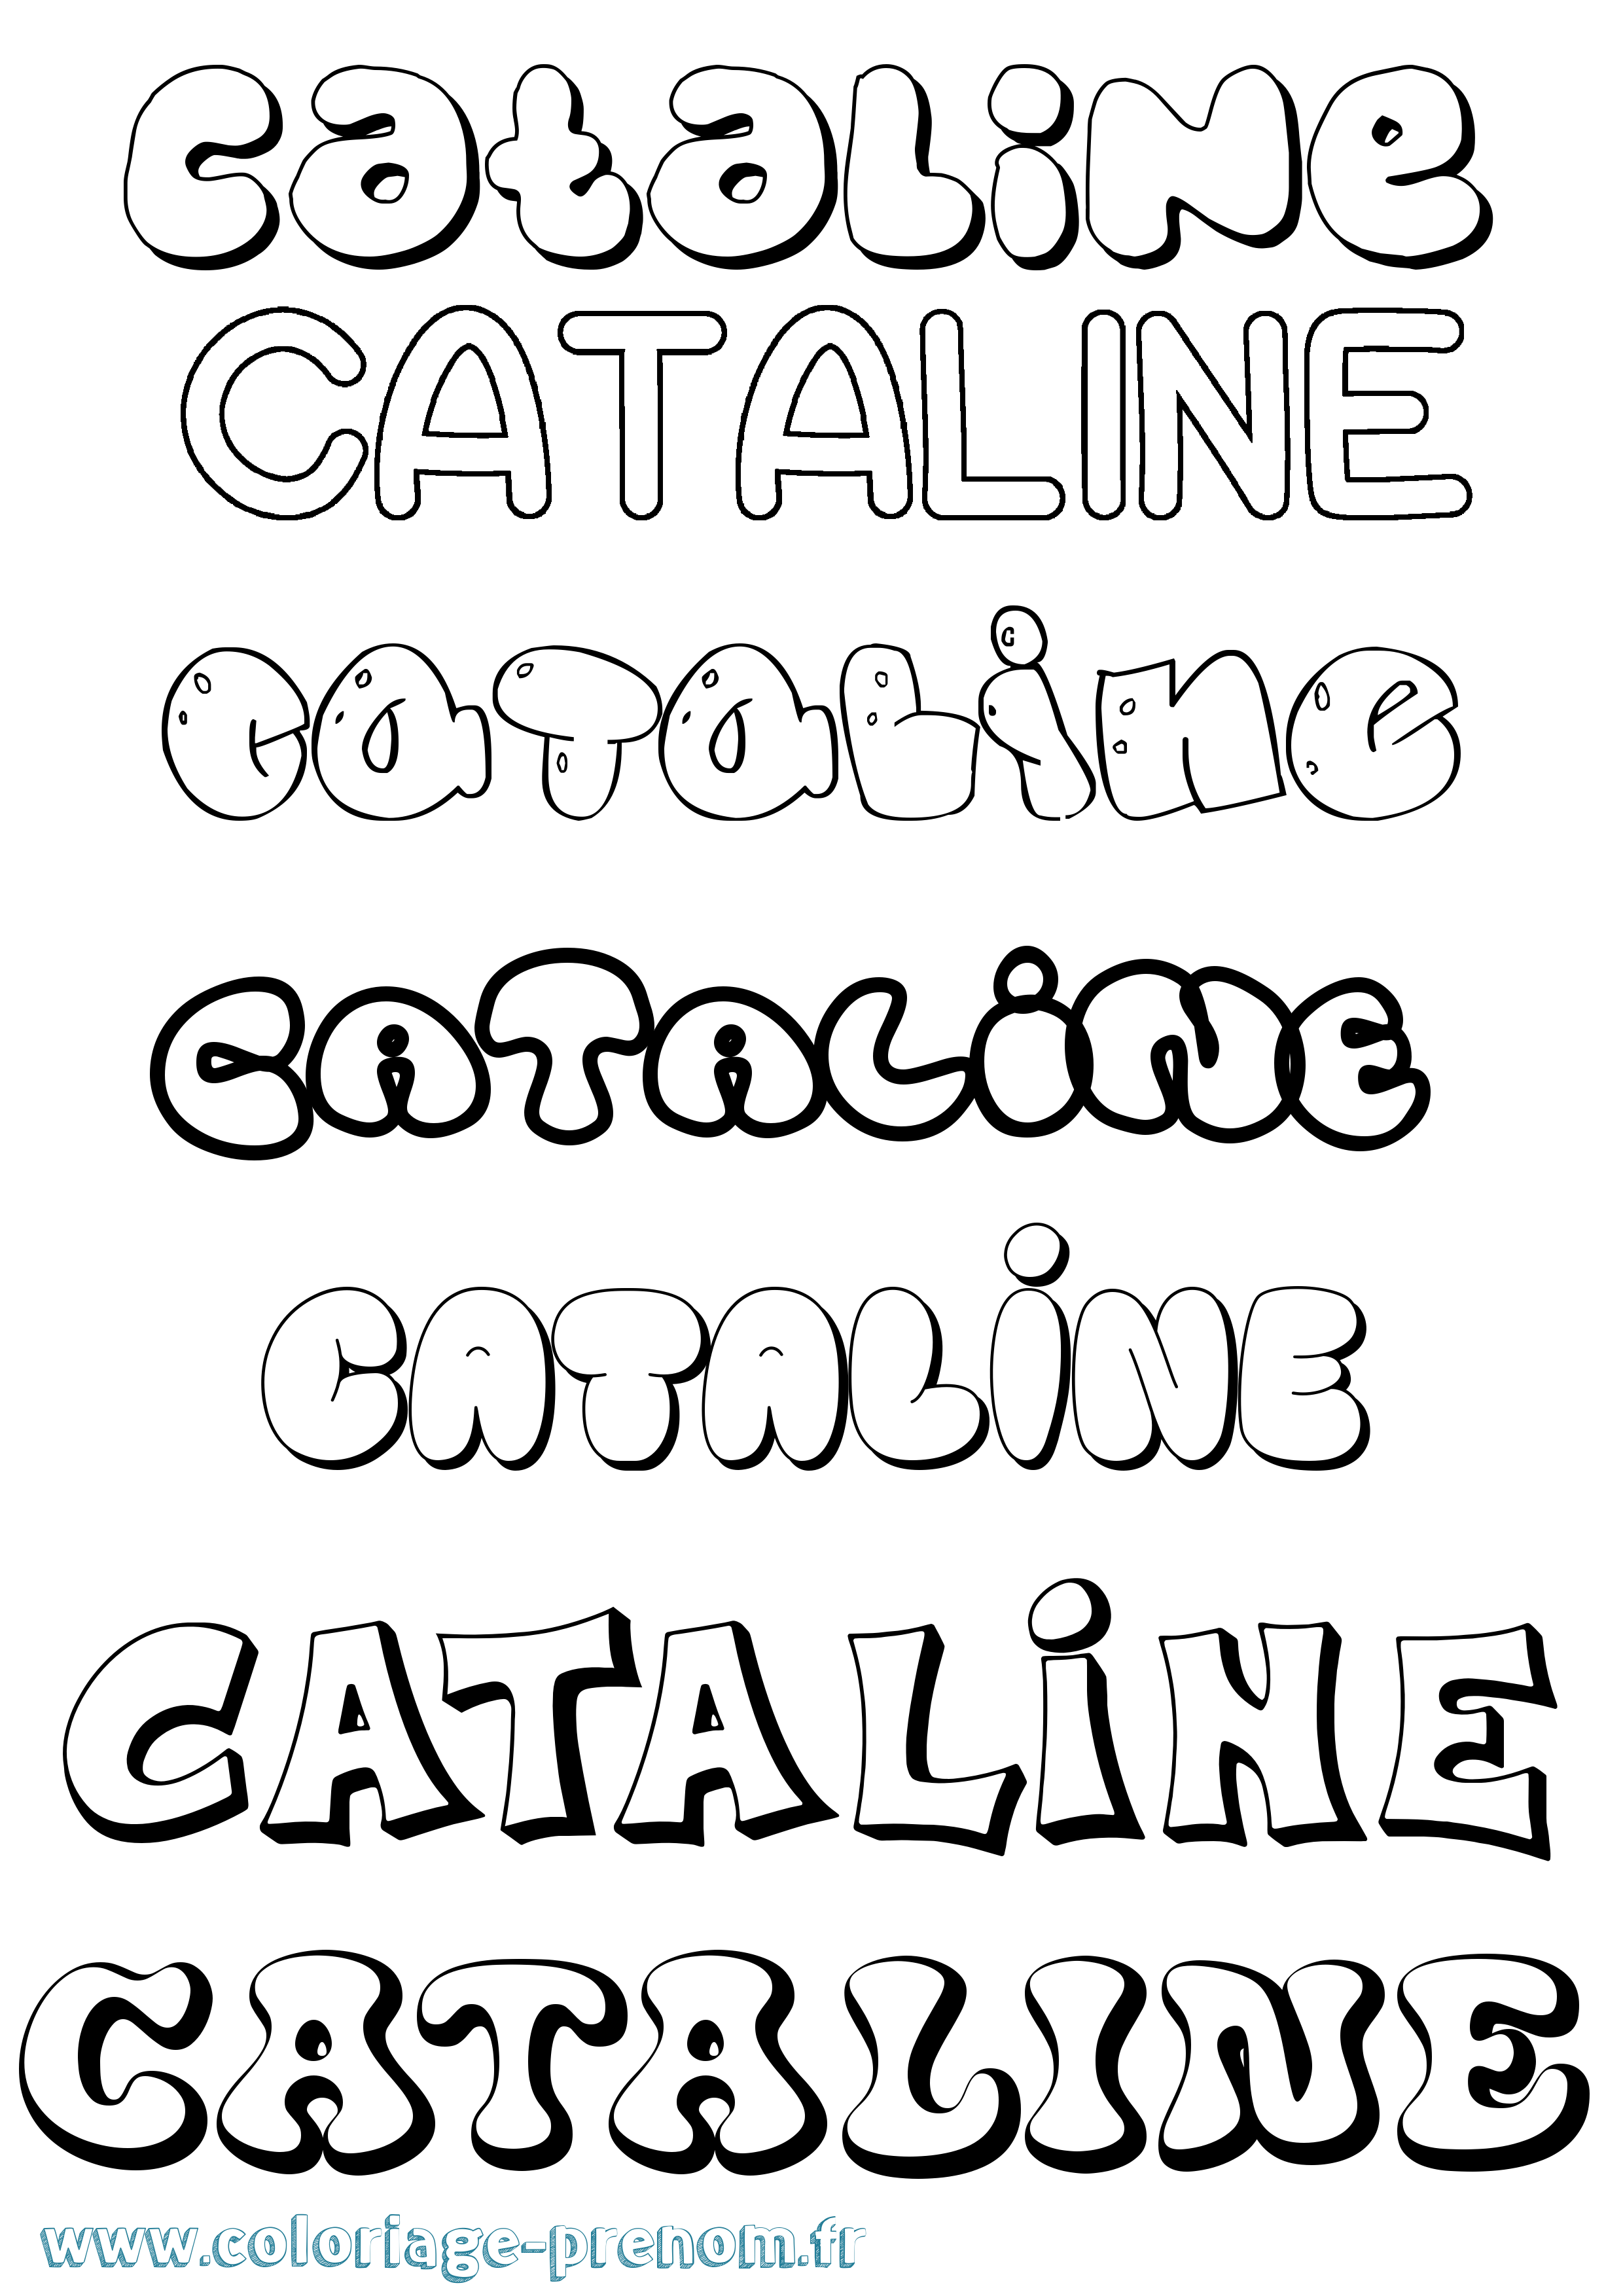 Coloriage prénom Cataline Bubble